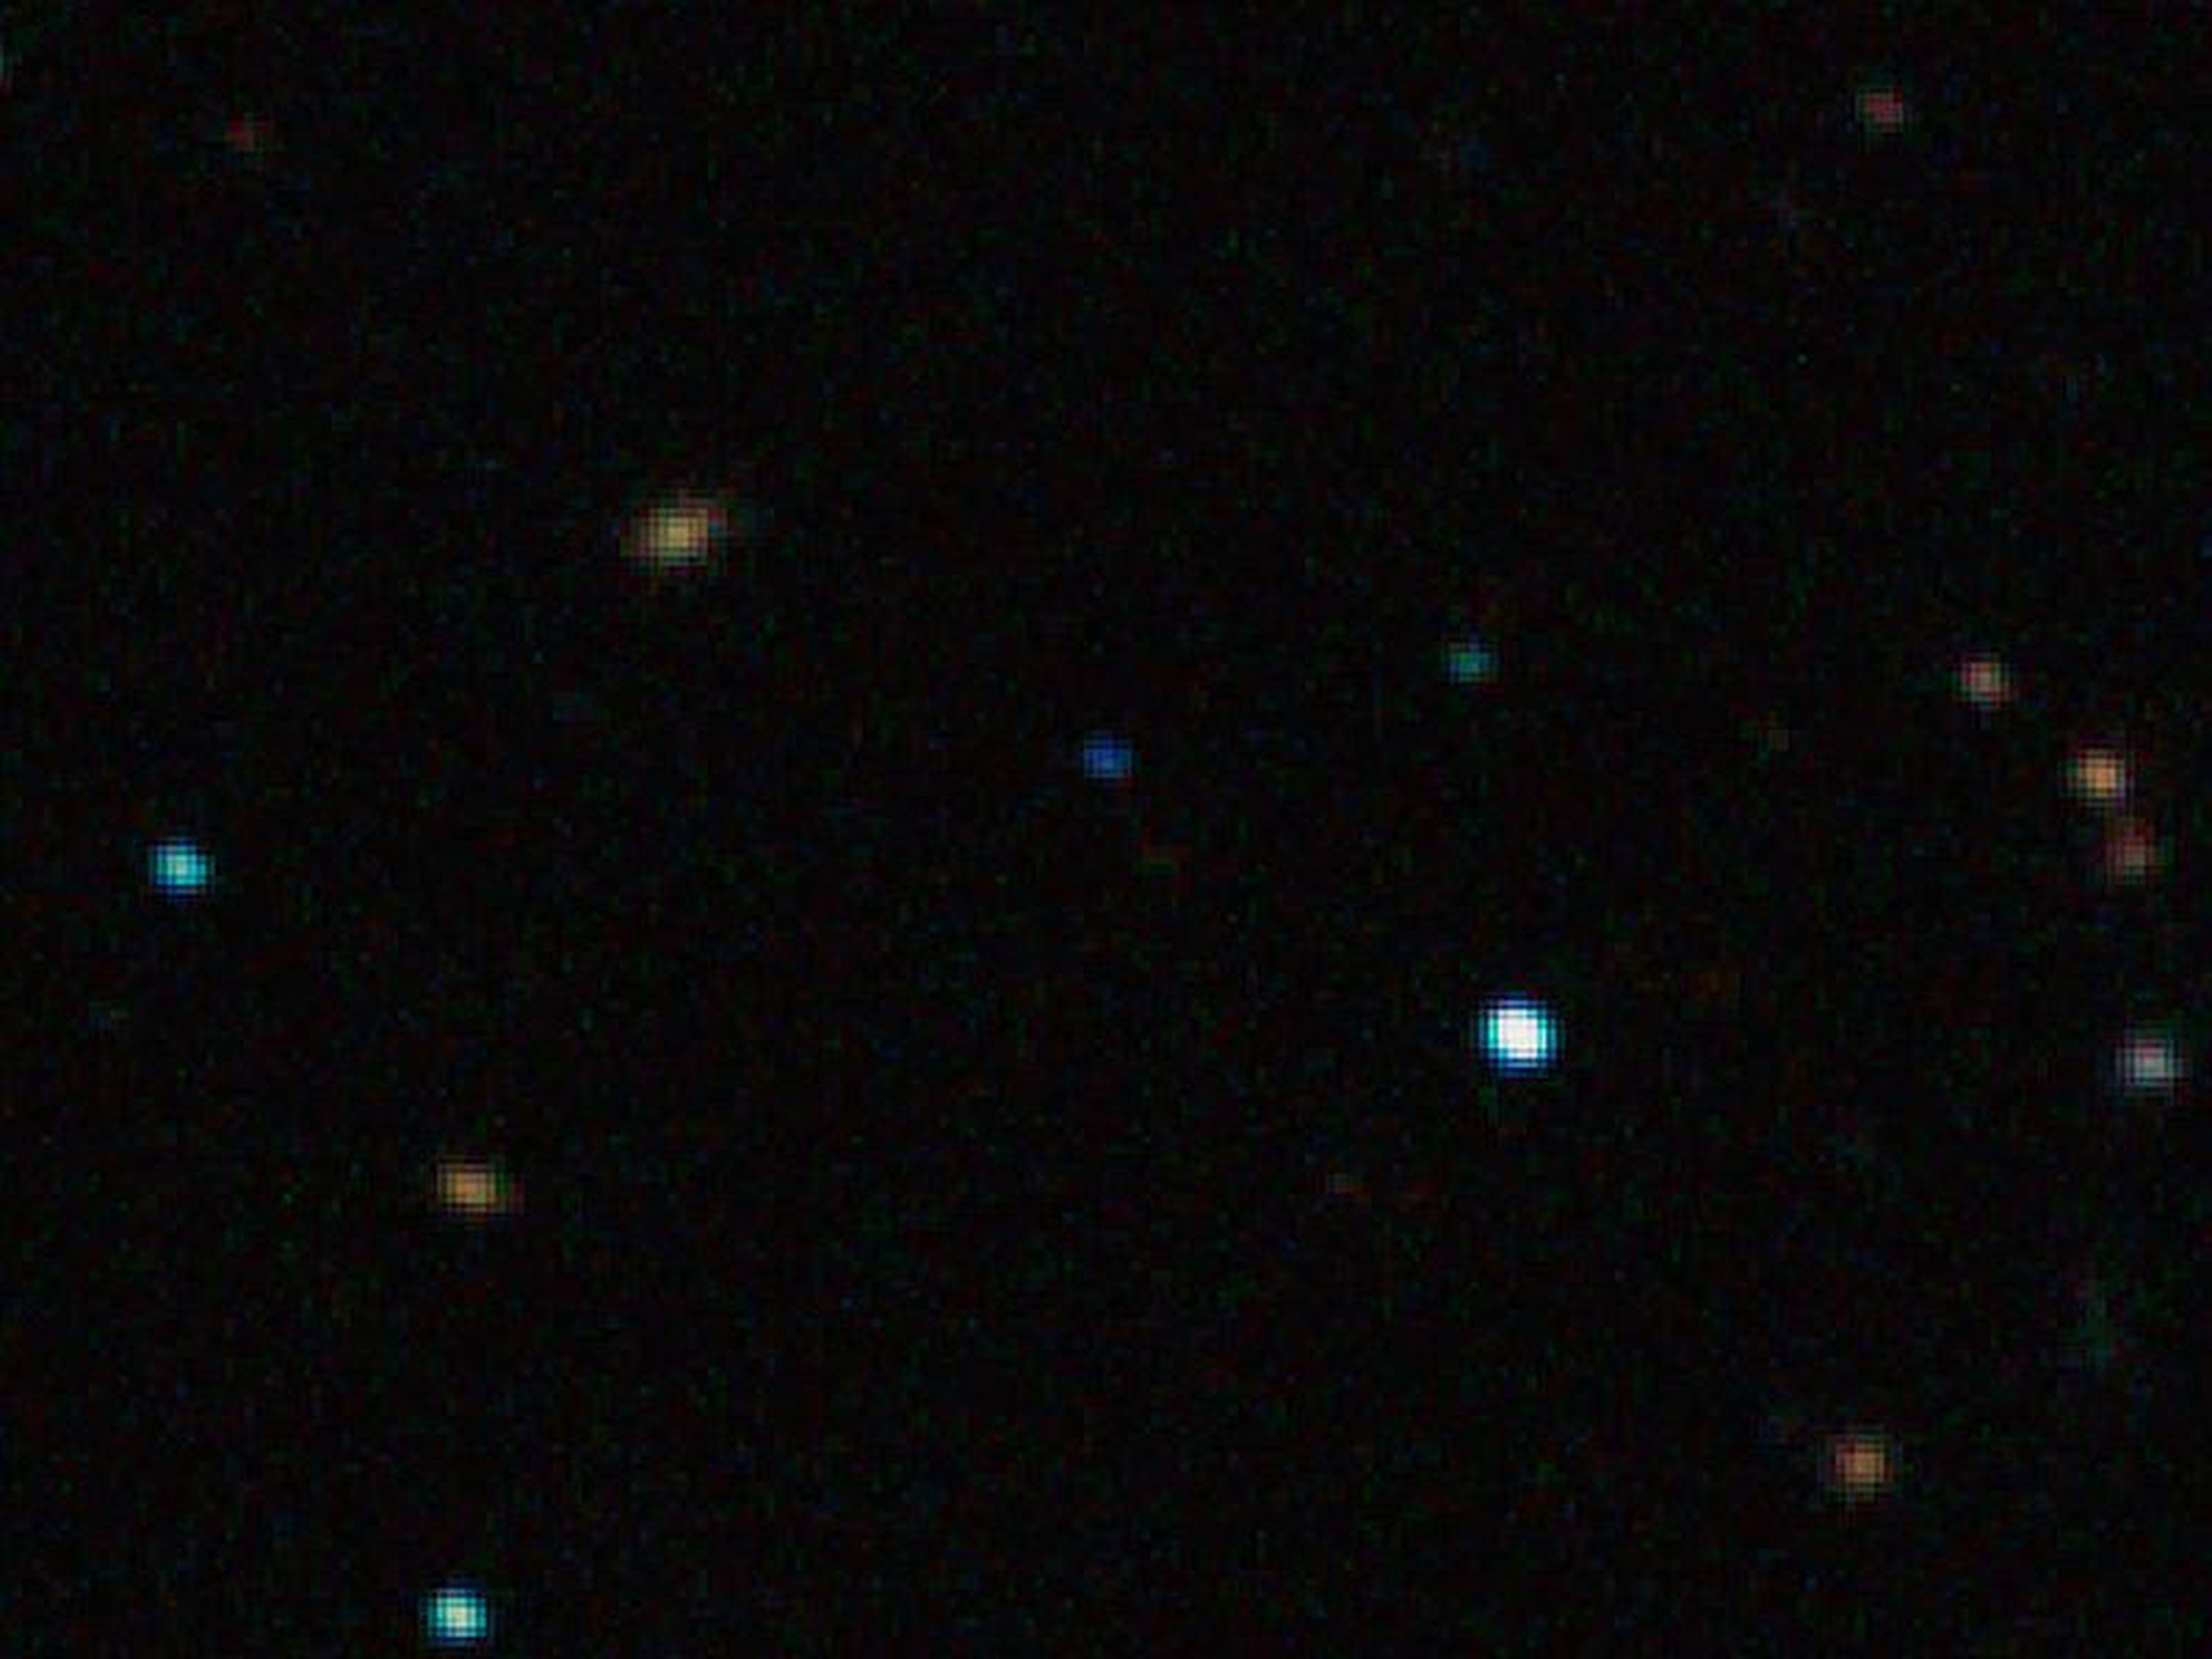 Imagen capturada por el instrumento SOFI en el Telescopio de Nueva Tecnología de ESO en el Observatorio La Silla muestra el planeta flotante libre CFBDSIR J214947.2-040308.9 en luz infrarroja.